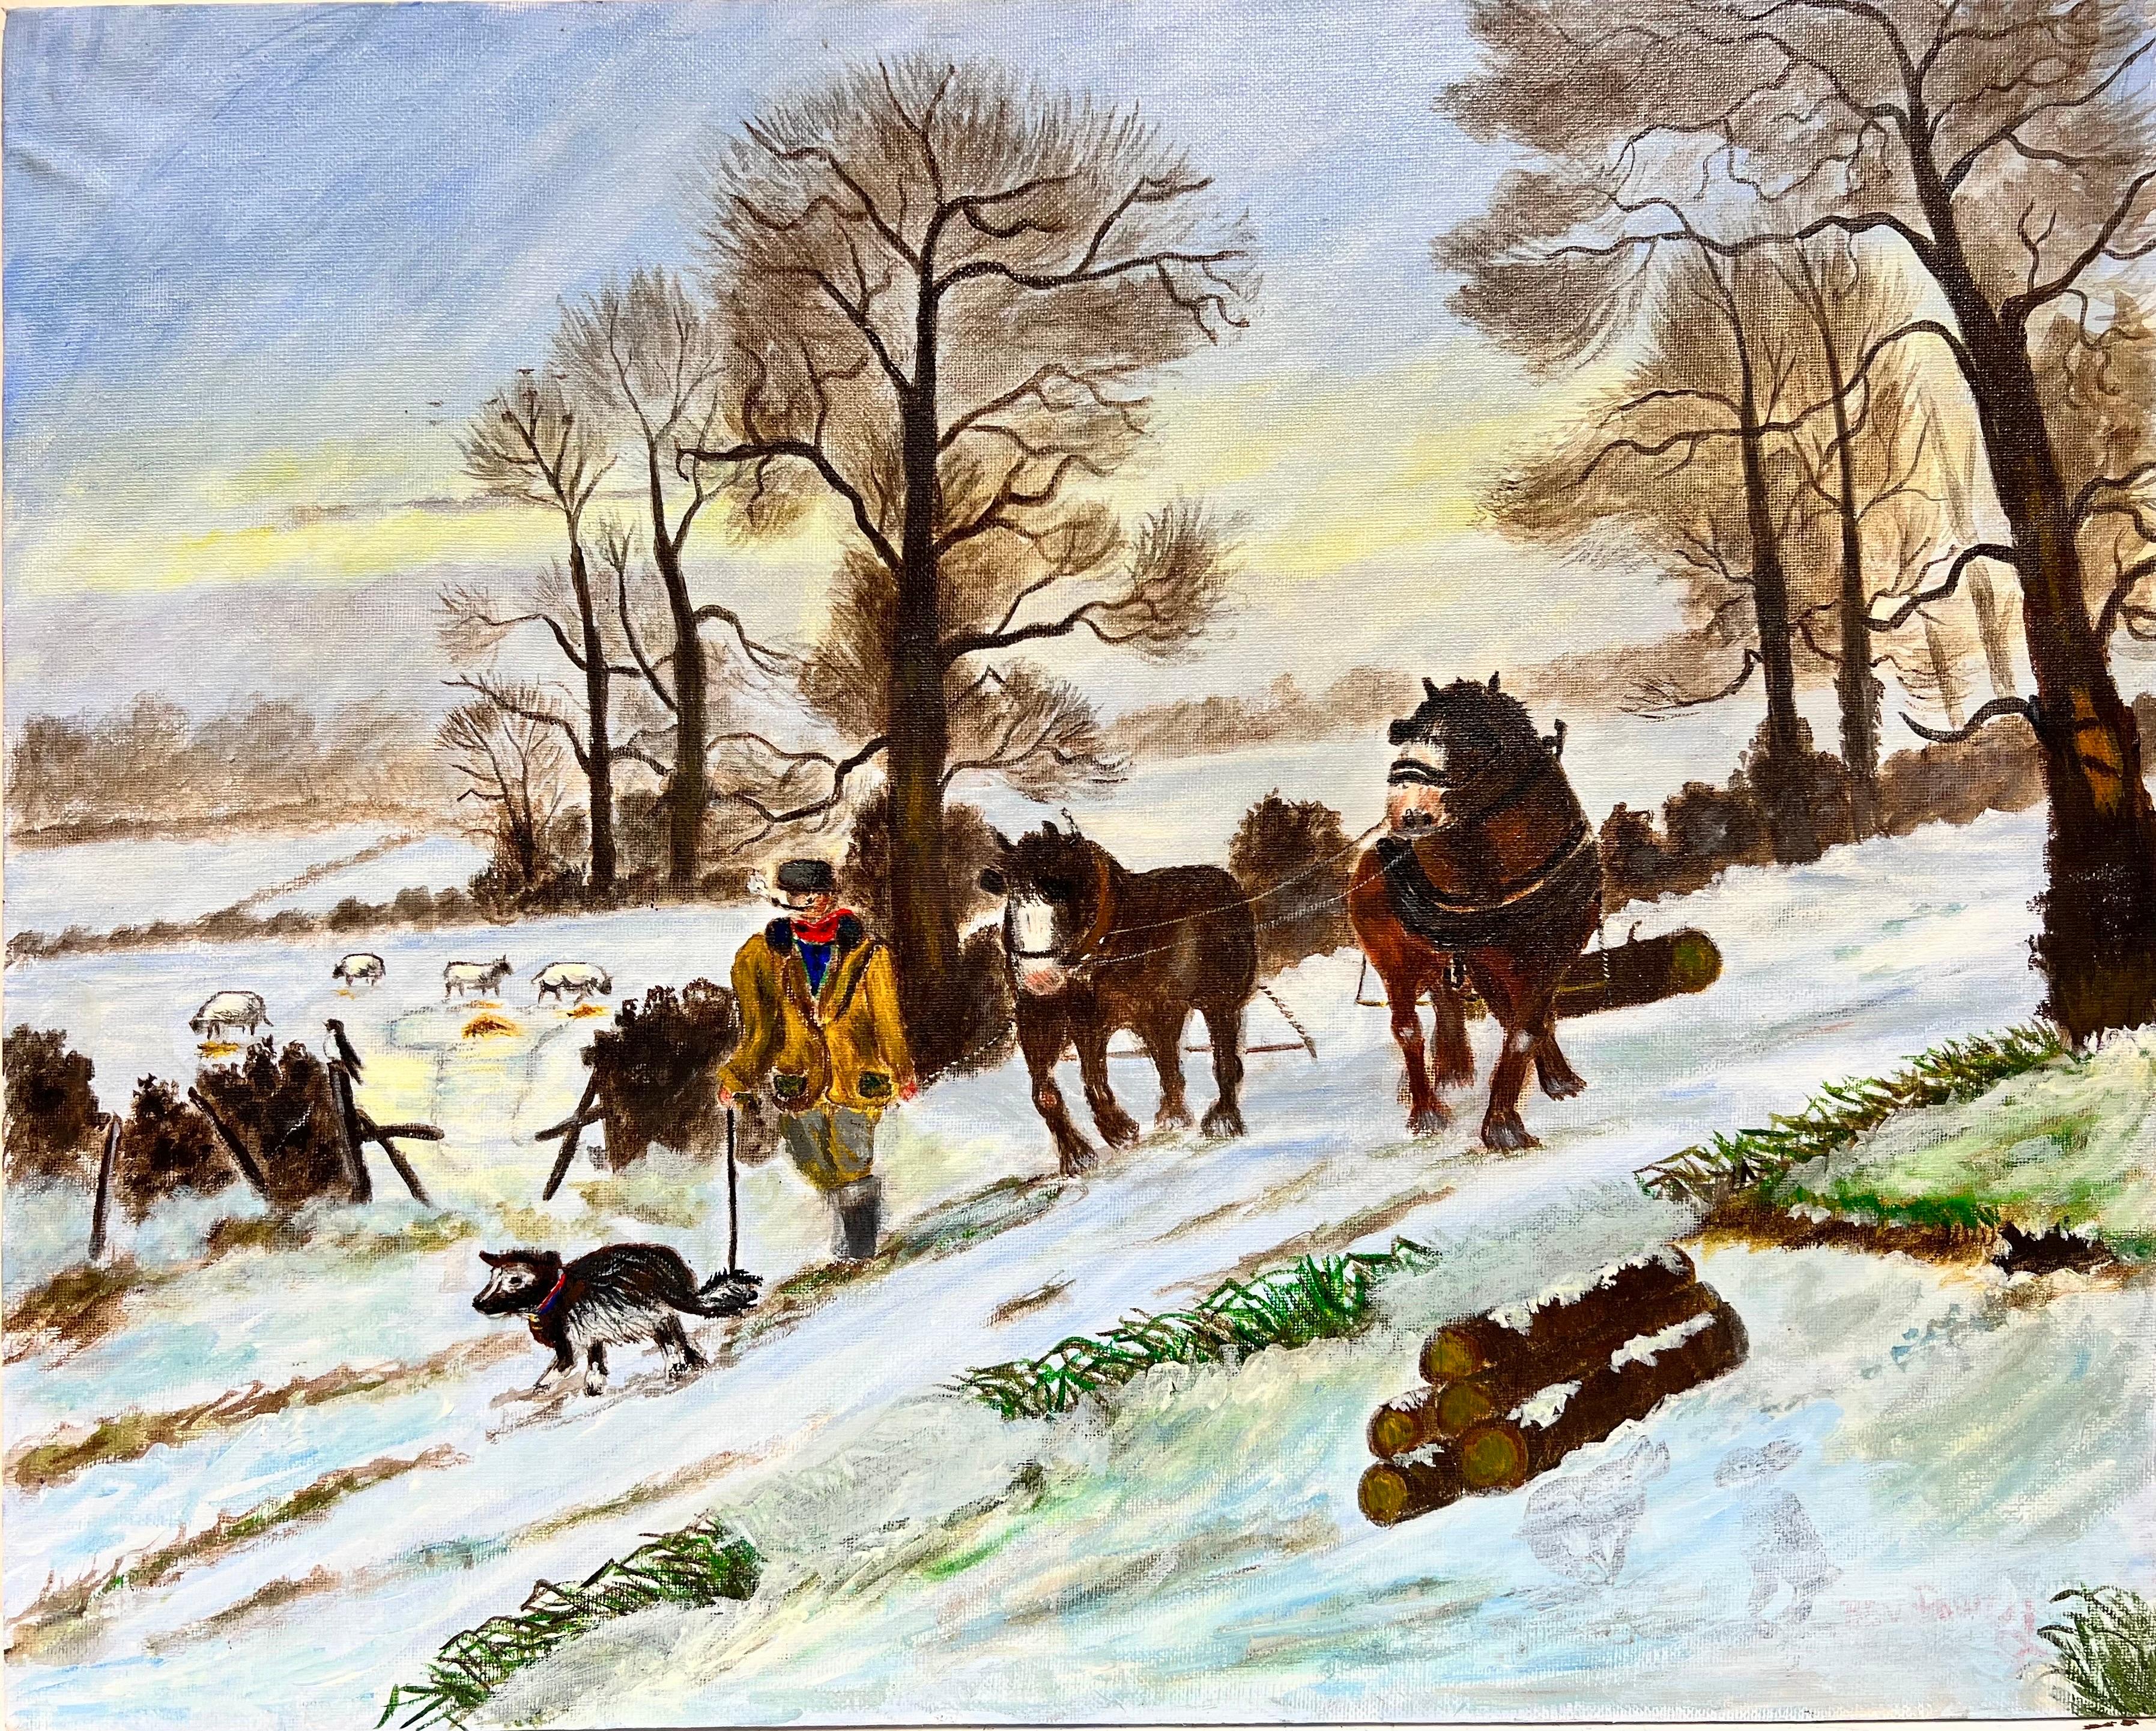 L'équipe de bergers avec des chevaux lourds tirant du bois dans la neige